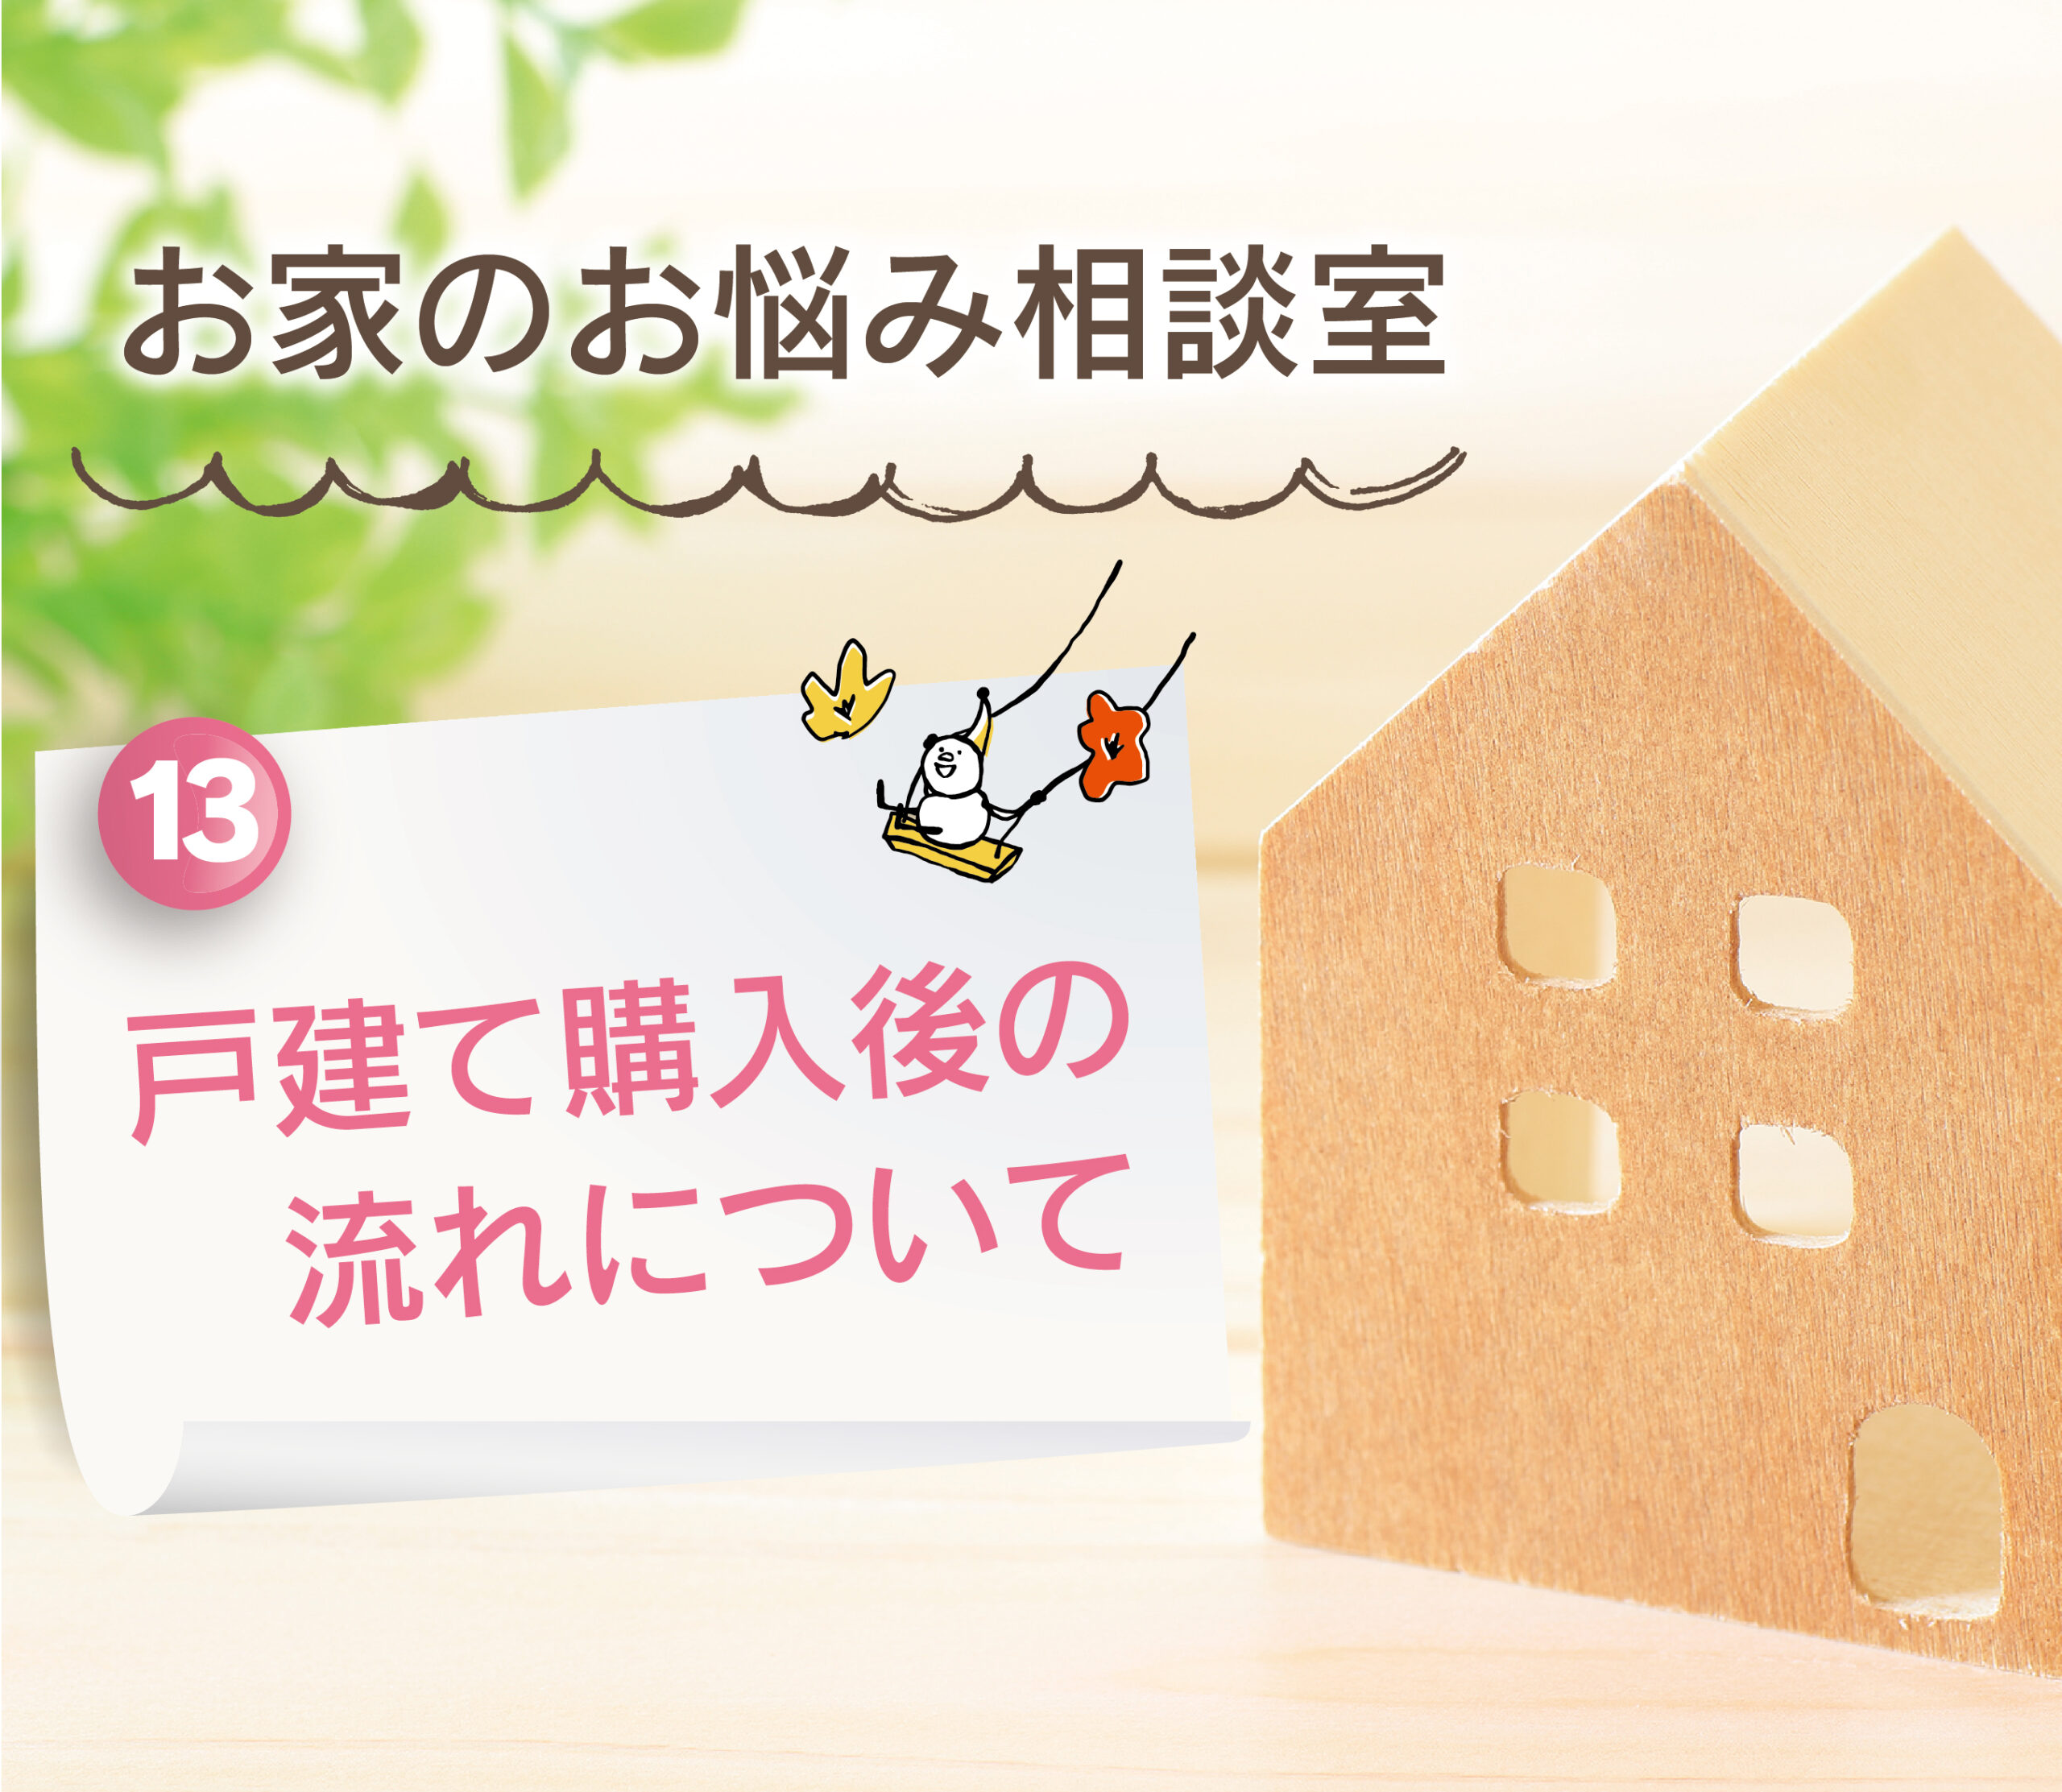 【大分県で建売住宅No.1の満足度を目指して】：戸建て購入後の流れについて